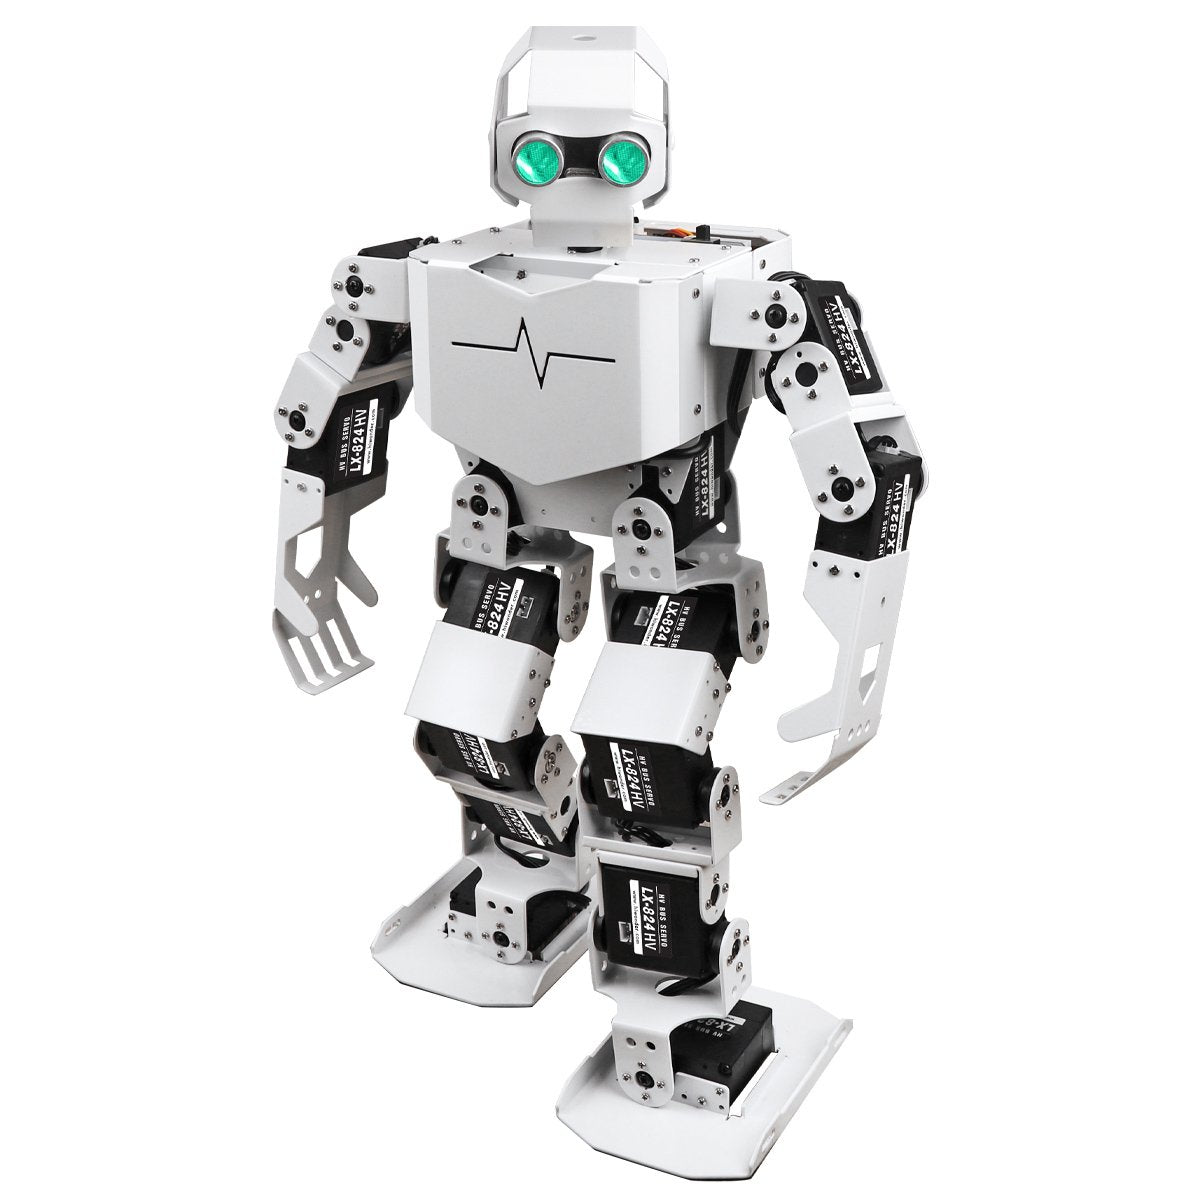 Nordamerika Ringlet Countryside Tonybot: Hiwonder Humanoid Robot Educational Programming Kit/Arduino